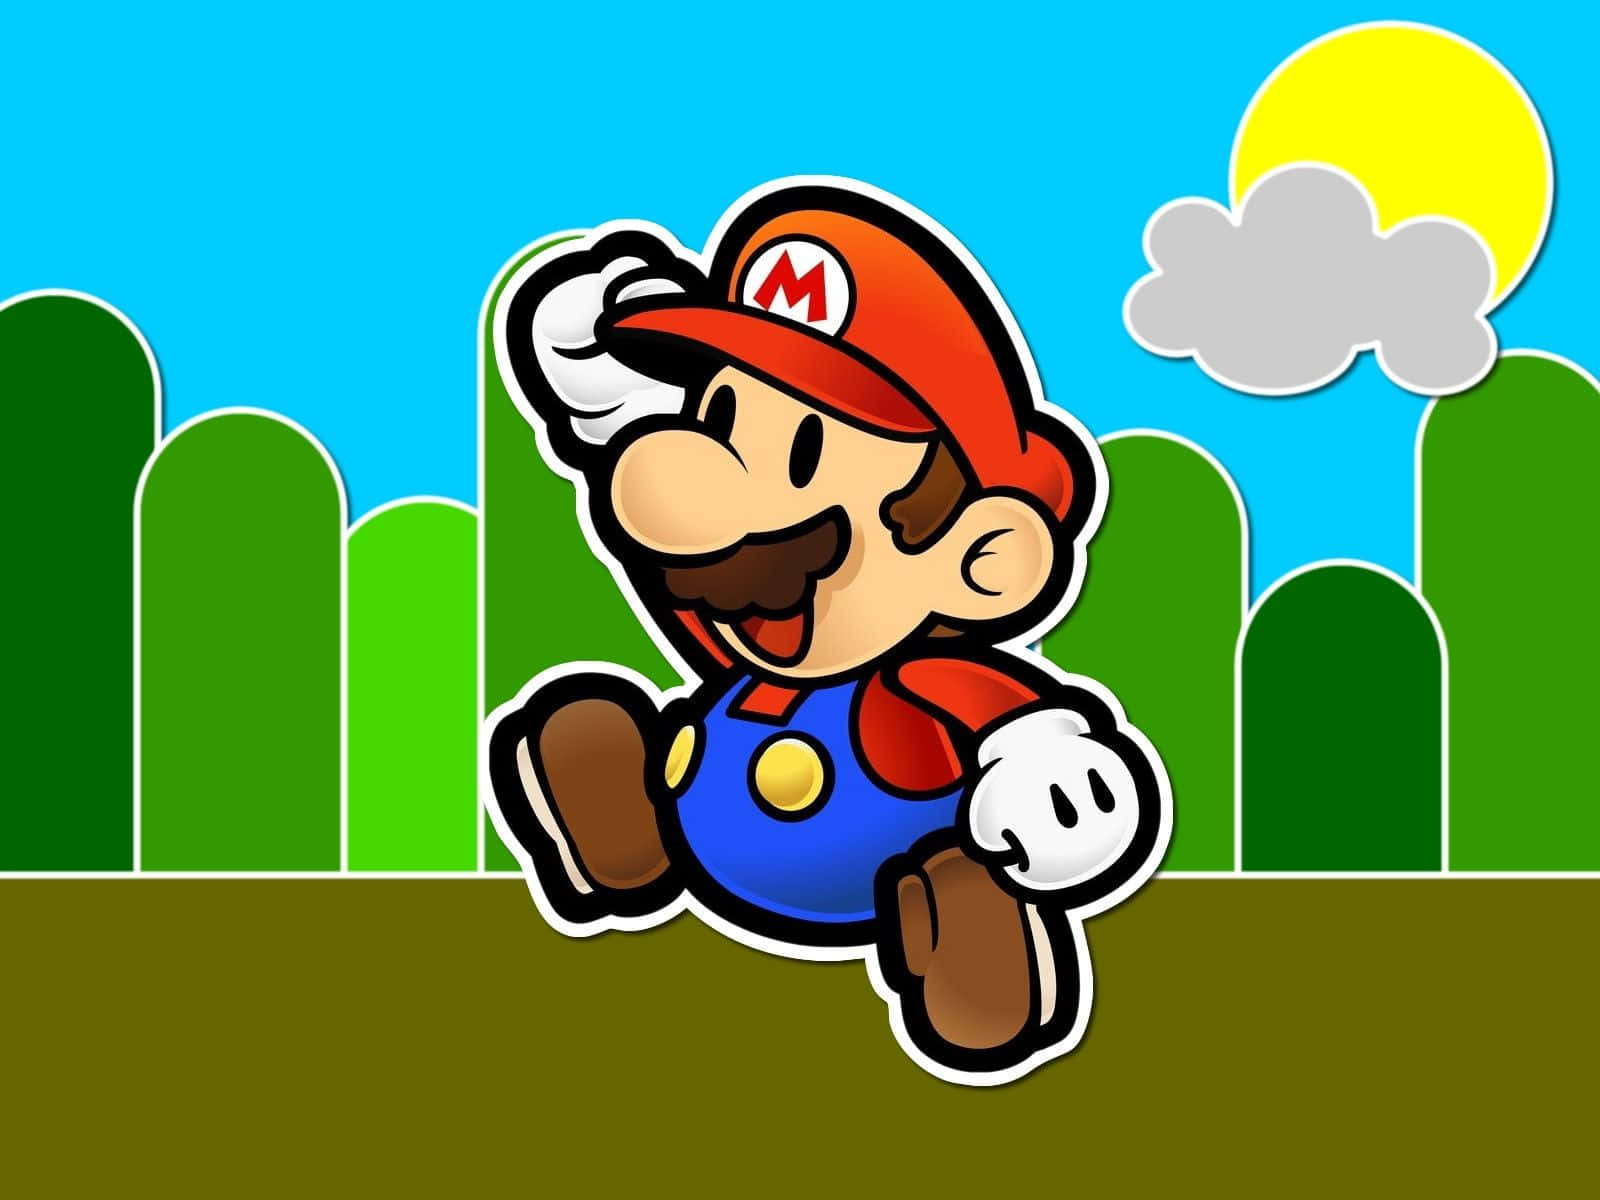 Mario tapetet er et af vores mest populære designs.